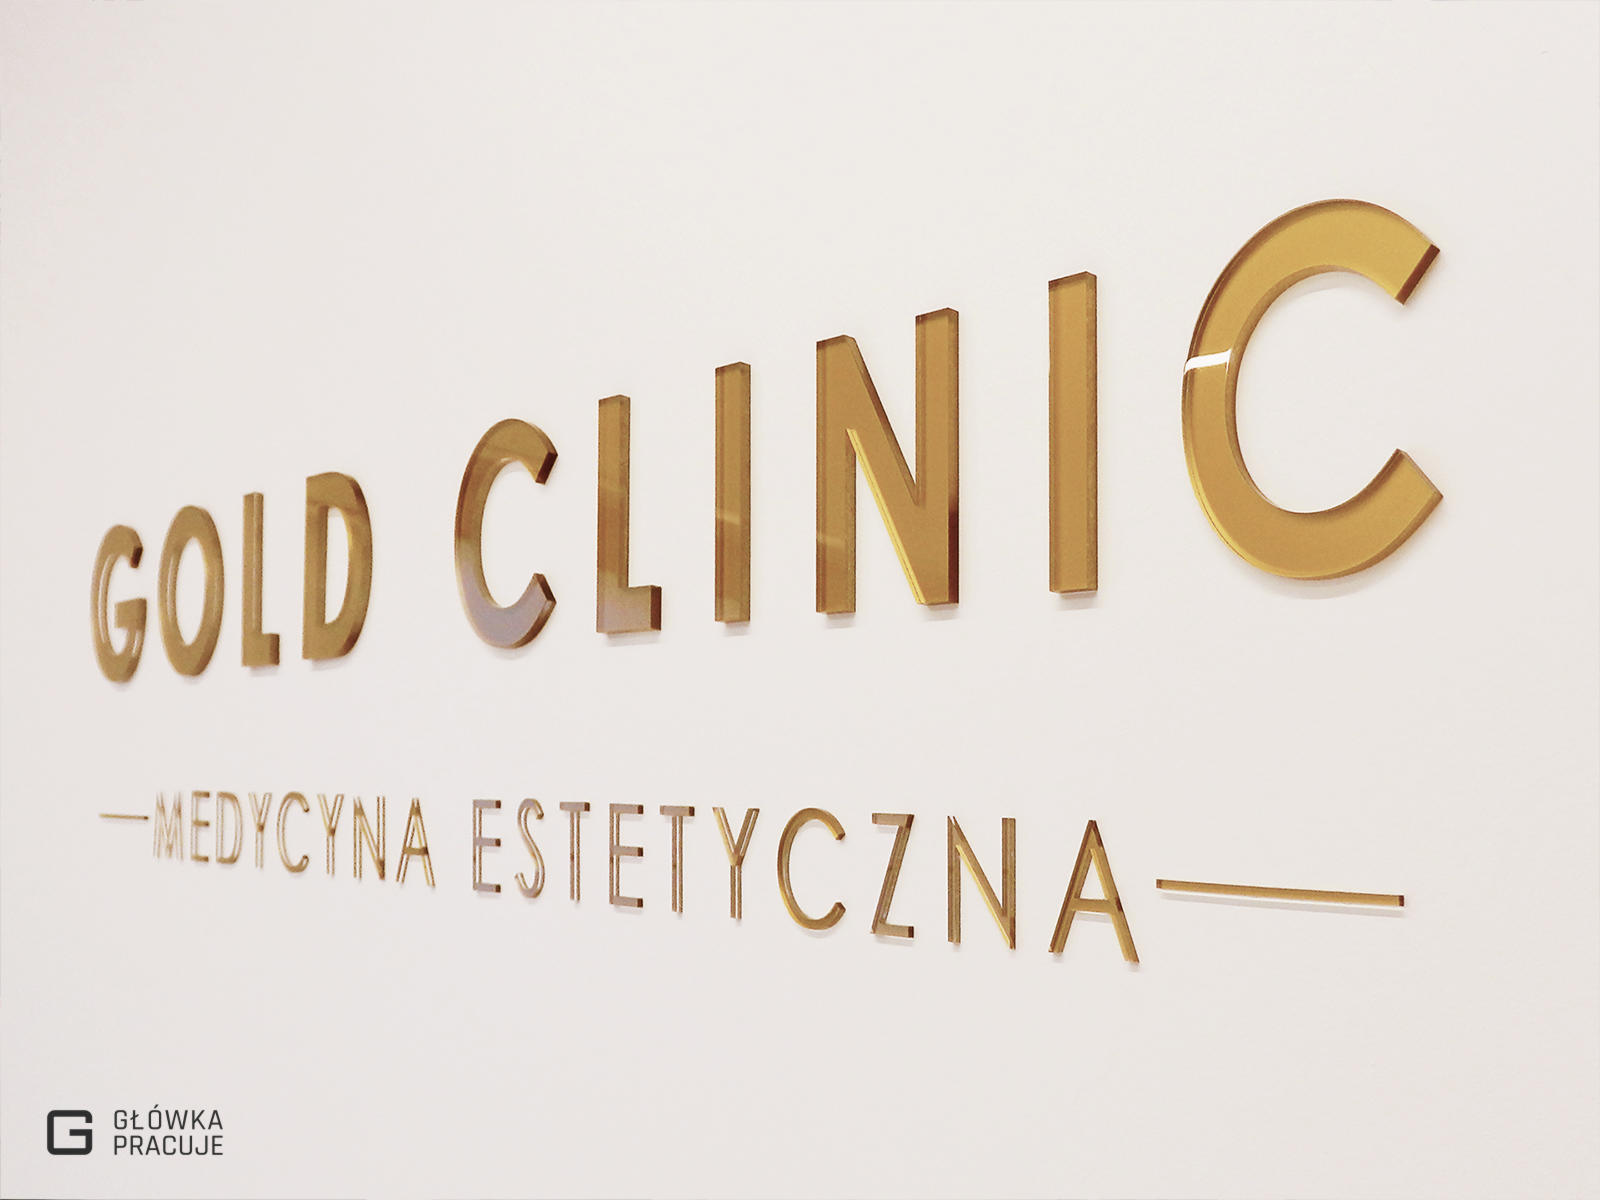 Główka pracuje pl Gold Clinic logotyp z plexi bezbarwnej podklejonej złotą folią, gabinet